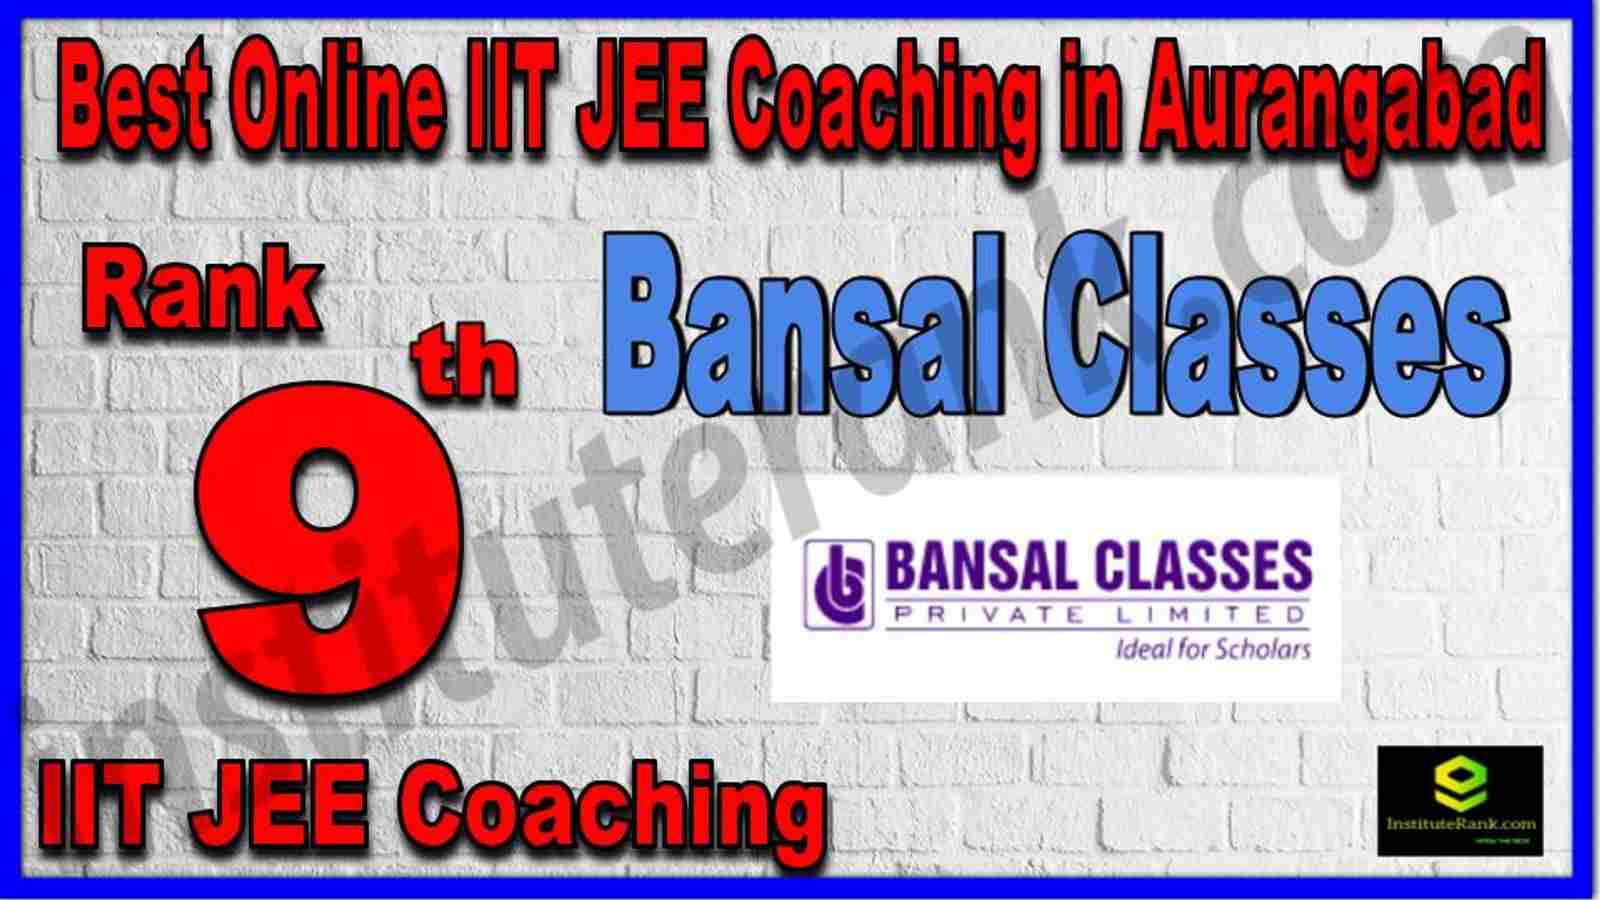 Rank 9th Best Online IIT JEE Coaching in Aurangabad